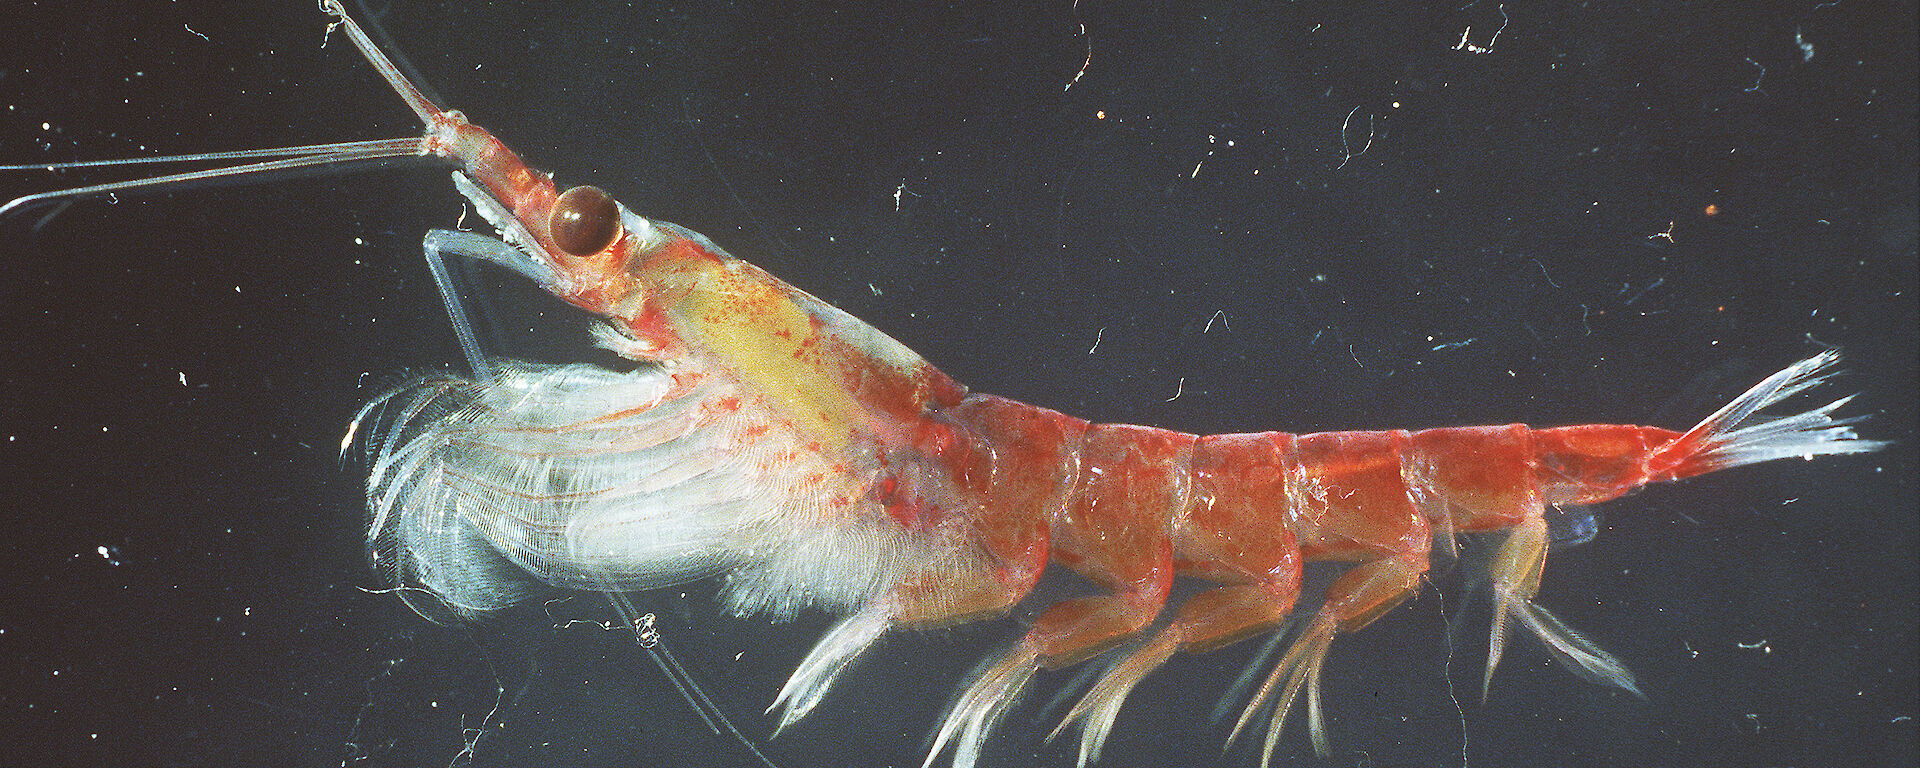 An antarctic krill